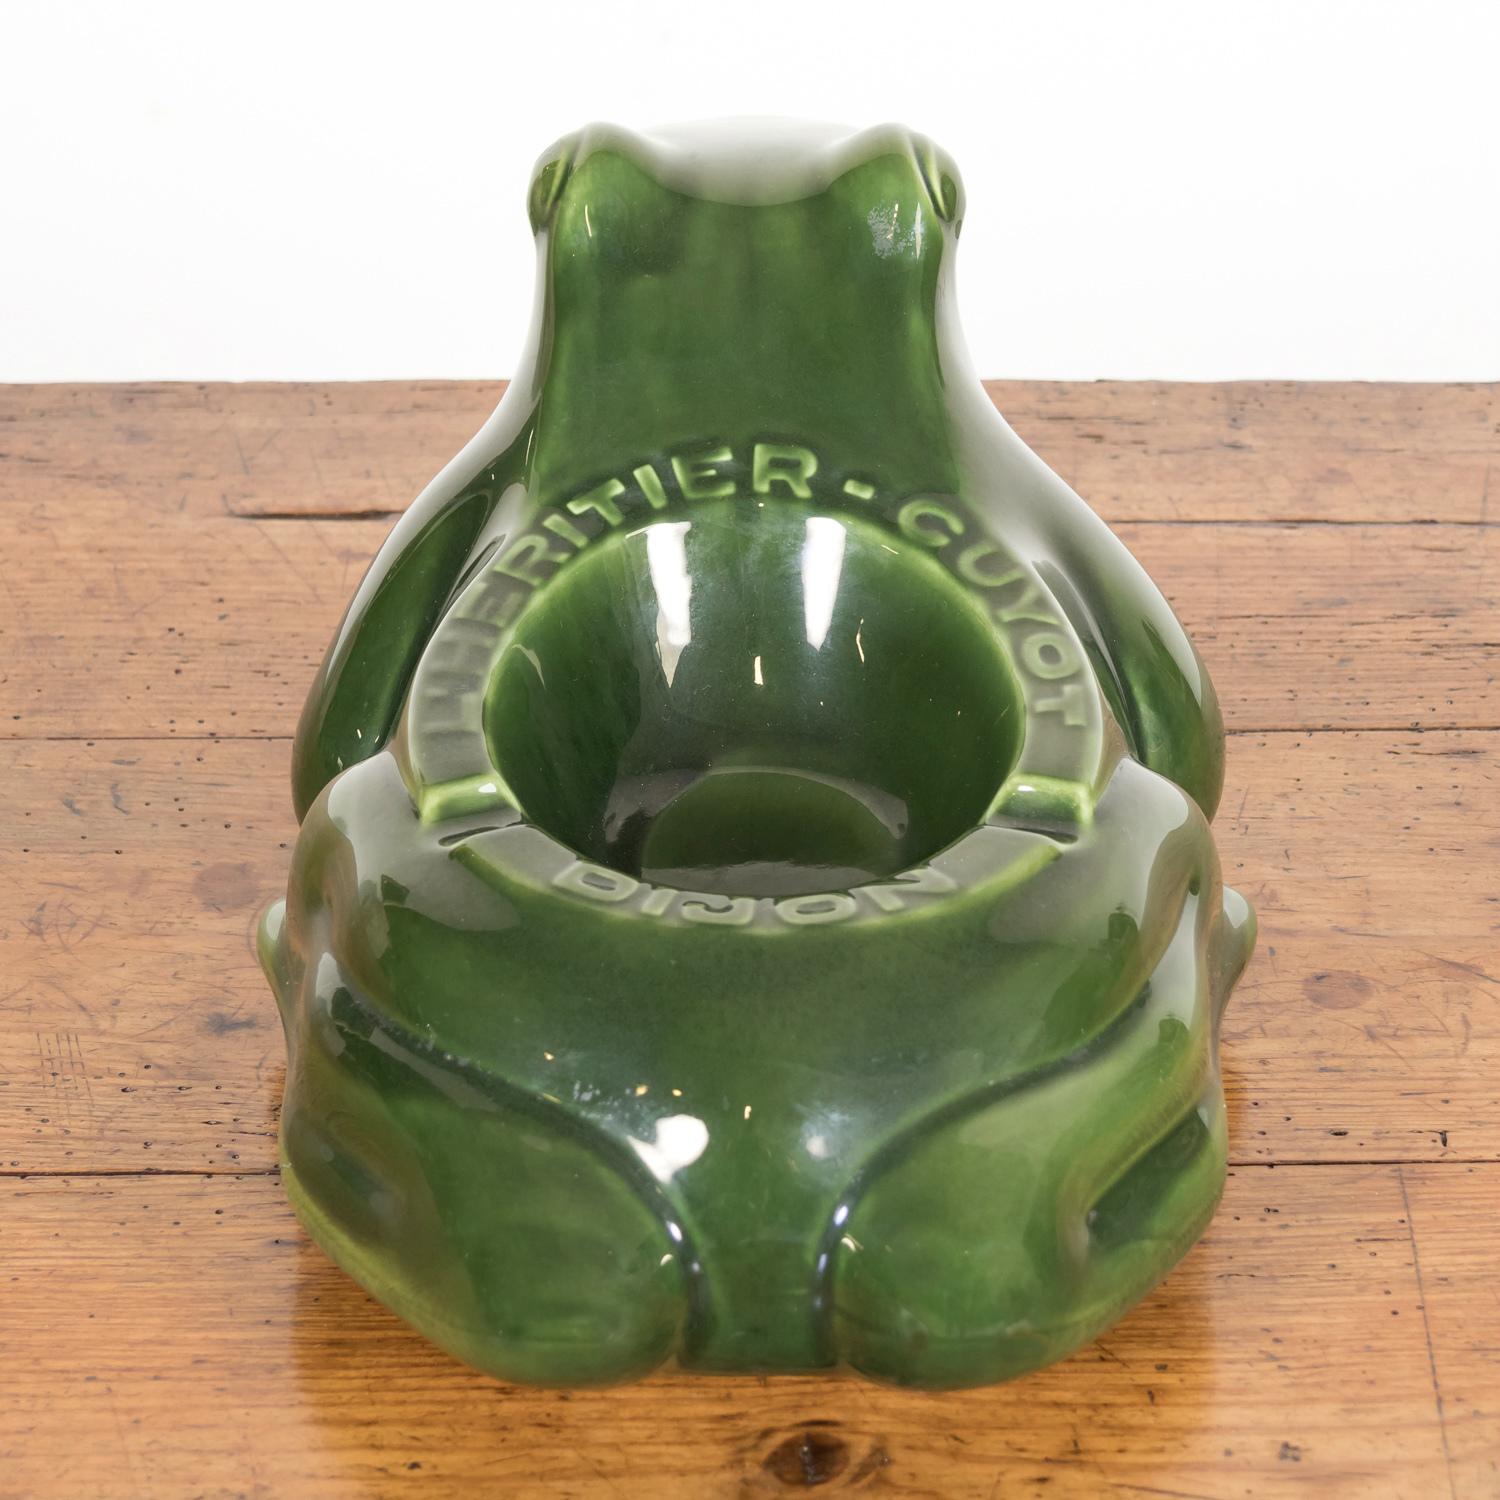 Céramique Grand cendrier vintage français L'HERITIER GUYOT DIJON avec grenouille en céramique verte